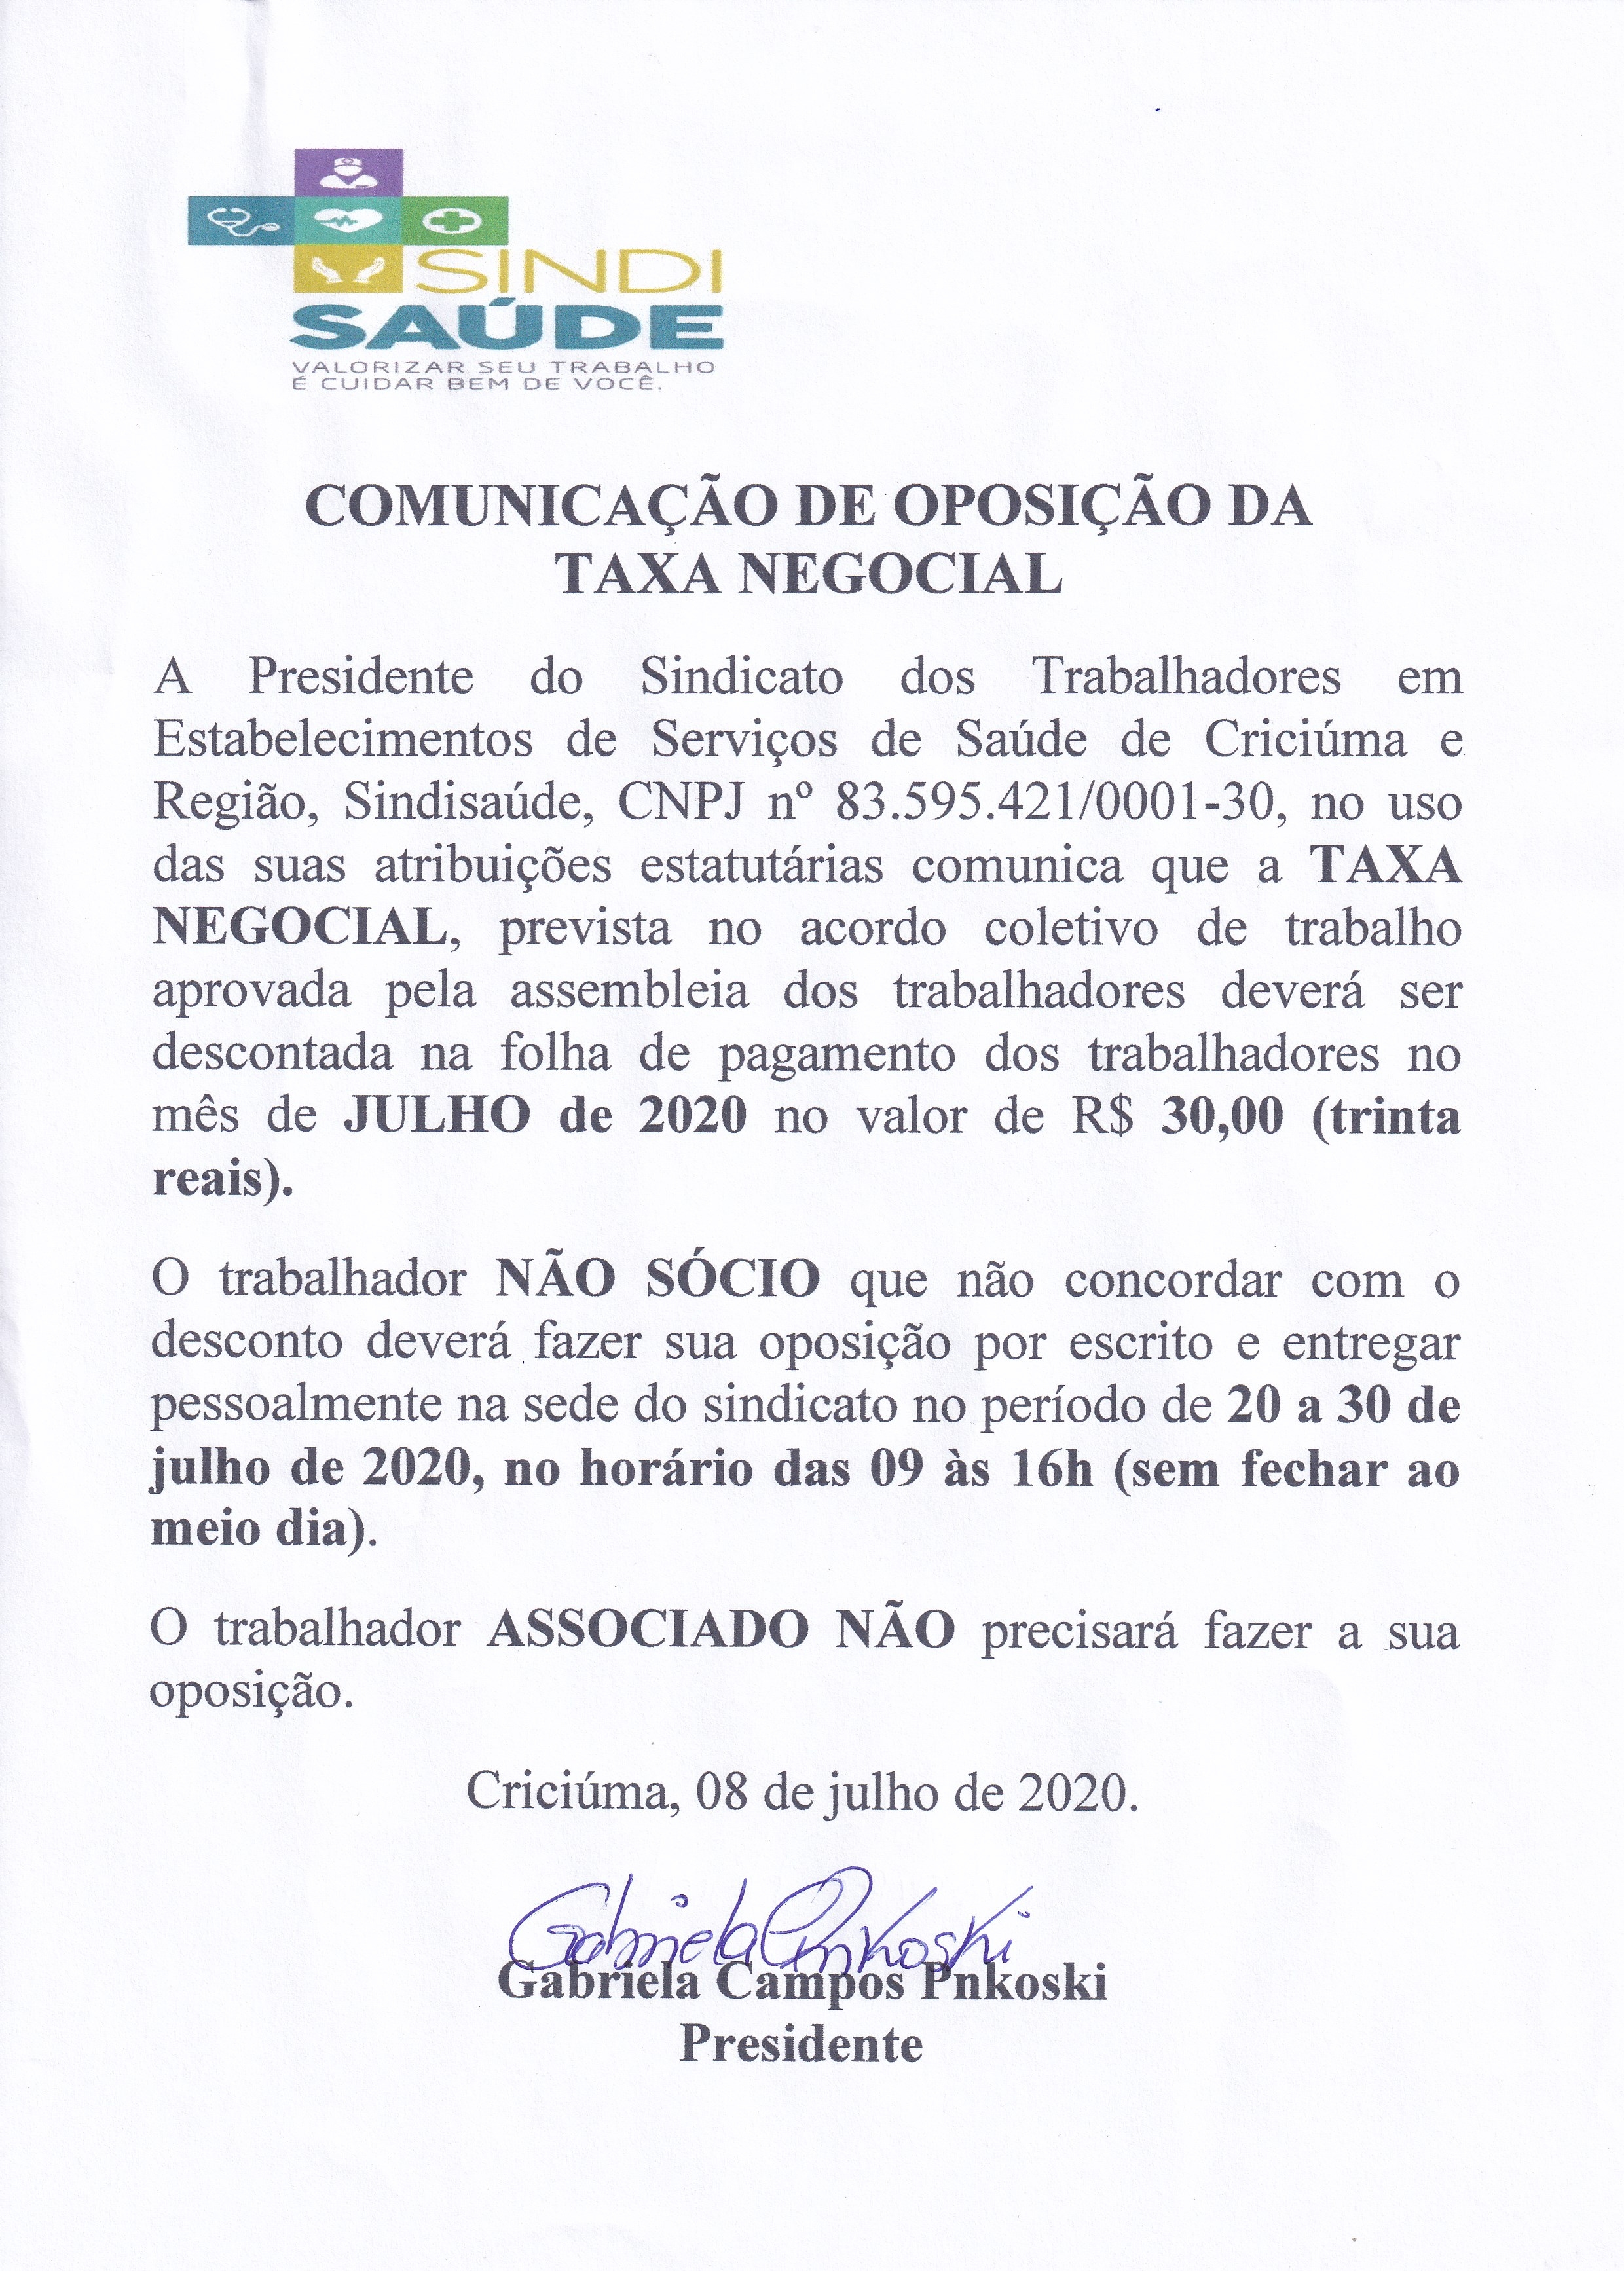 EDITAL DE OPOSIÇÃO AO DESCONTO DA TAXA NEGOCIAL JULHO DE 2020 - UNIMED